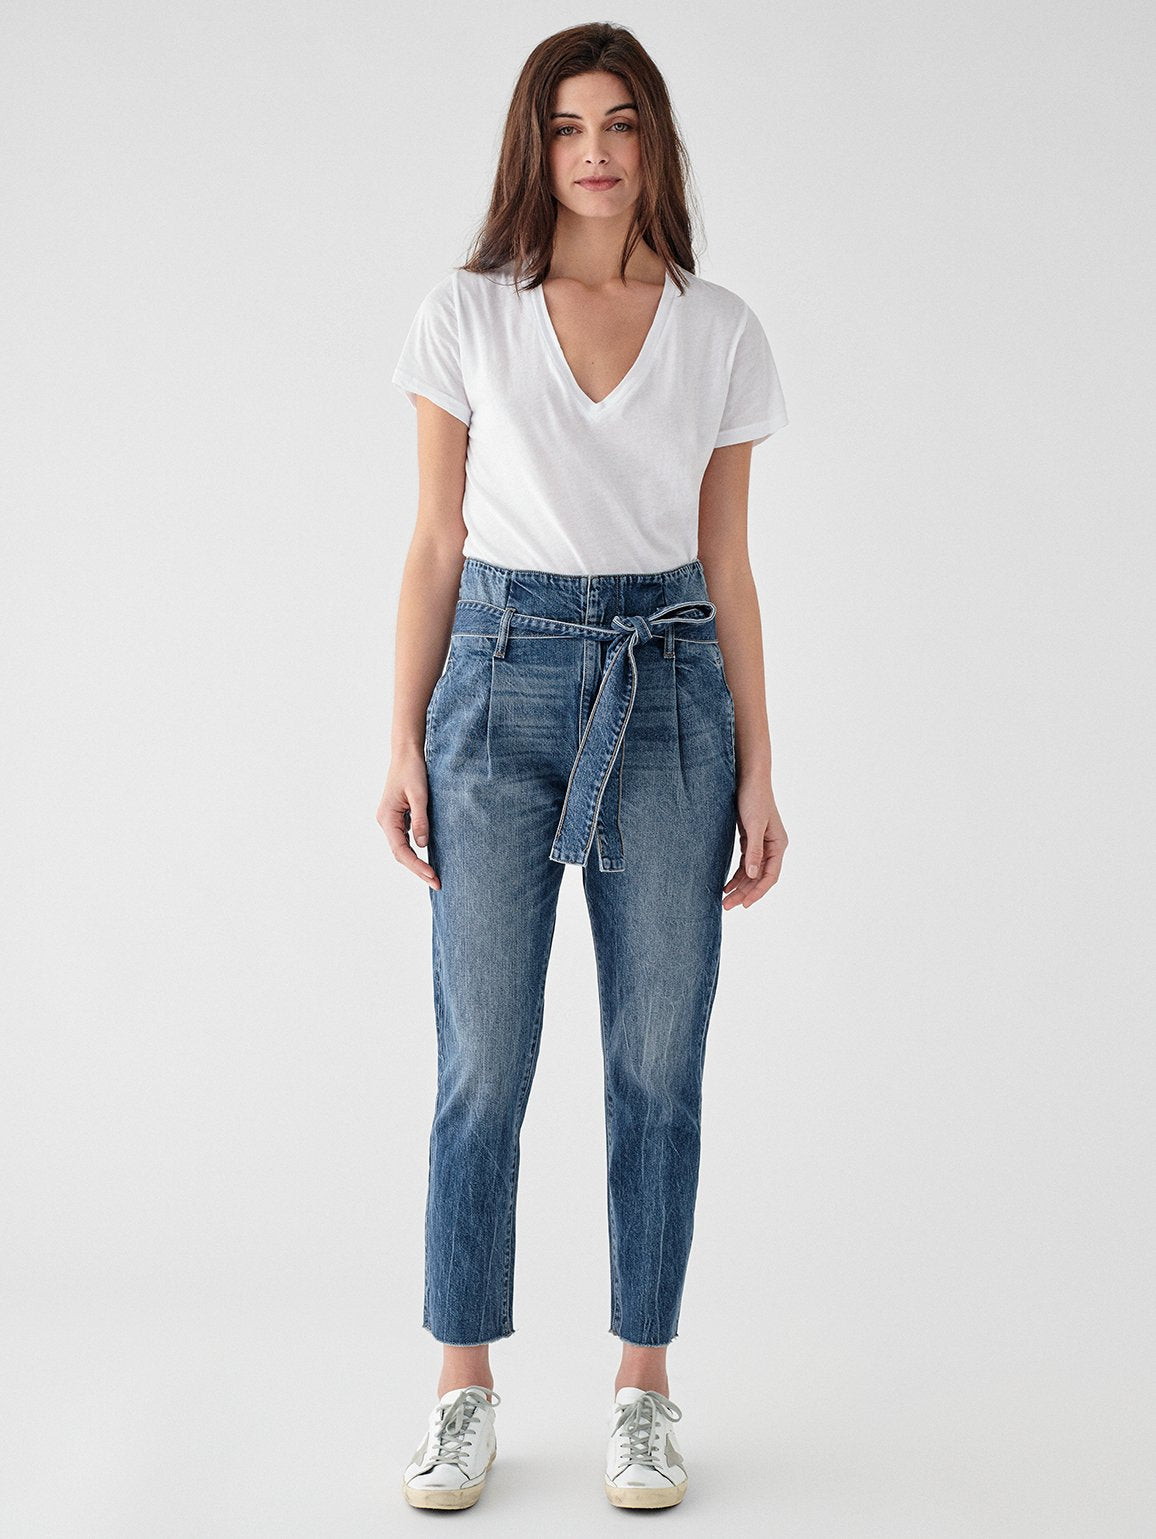 Wide Leg paper bag jeans - Denim blue - Kids | H&M IN